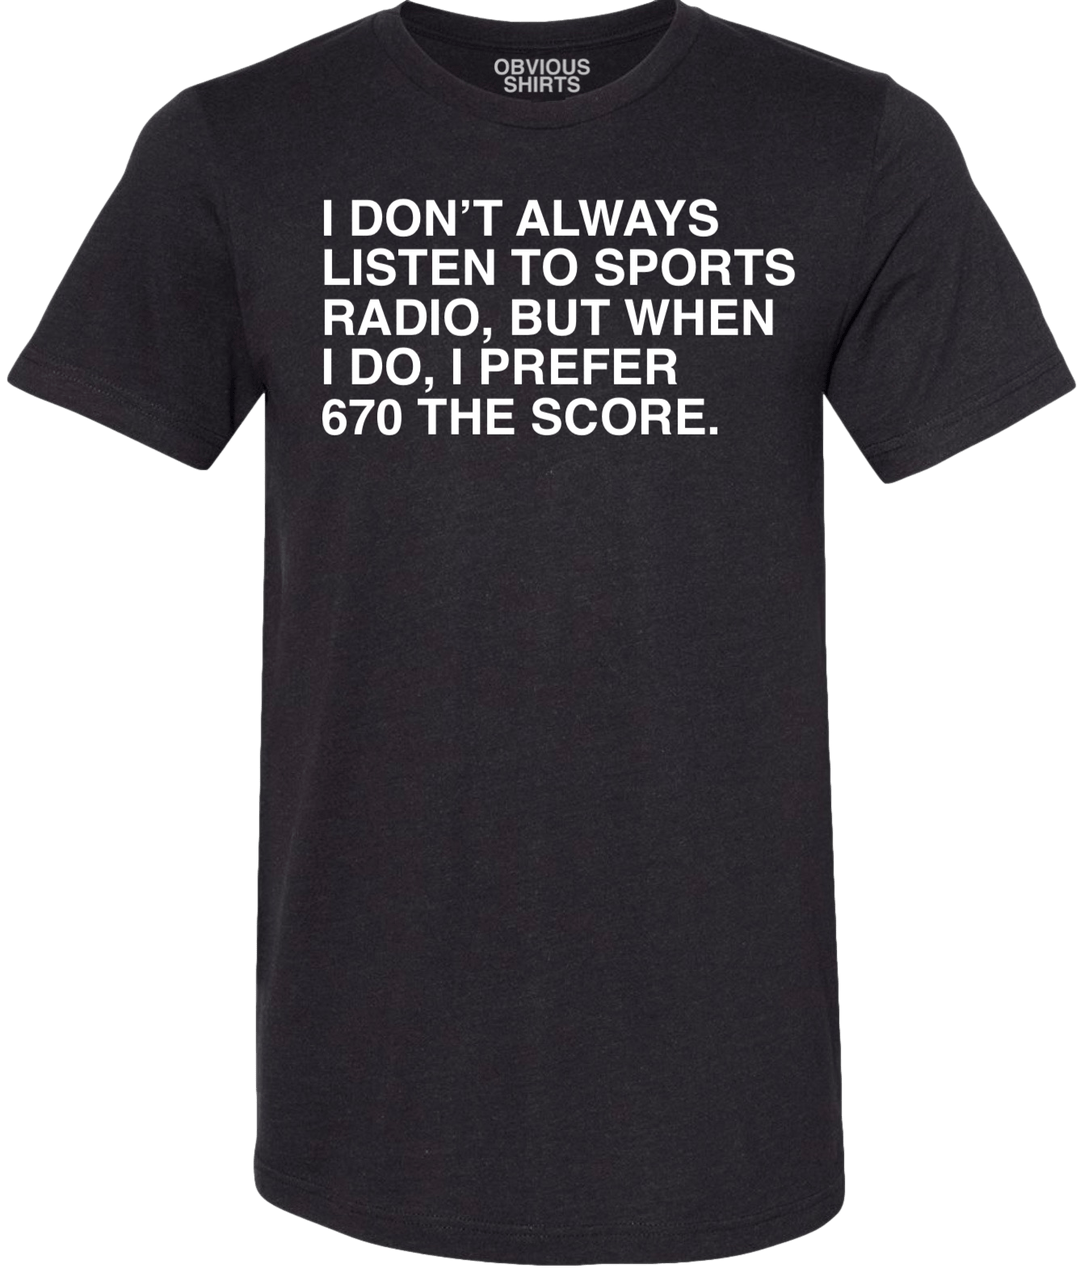 I DON'T ALWAYS LISTEN TO SPORTS RADIO. (BLACK) - OBVIOUS SHIRTS